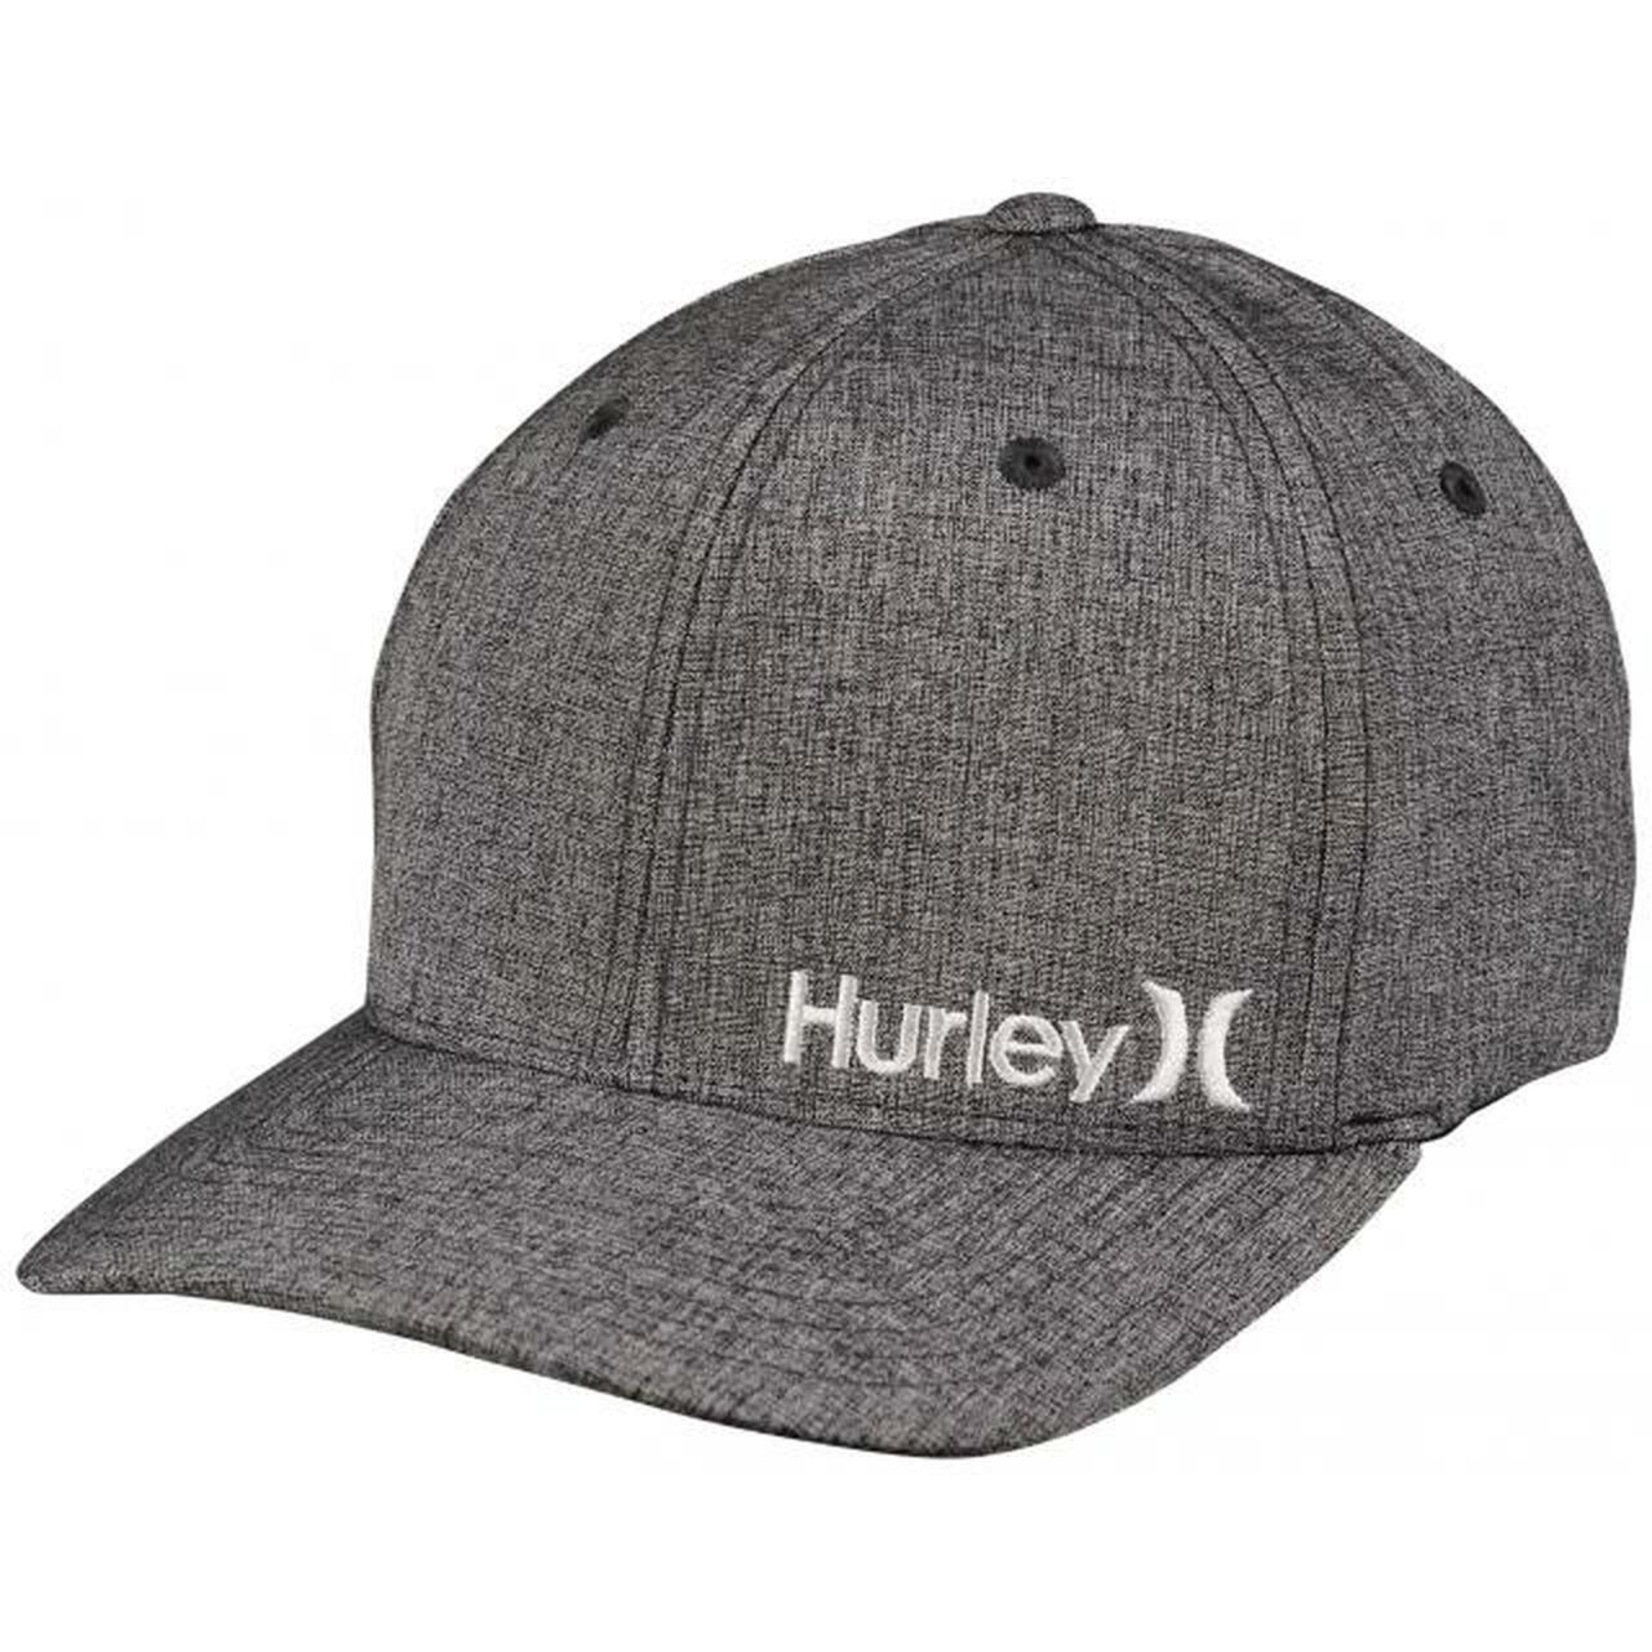 Hurley Hurley Hat, Corp Textures